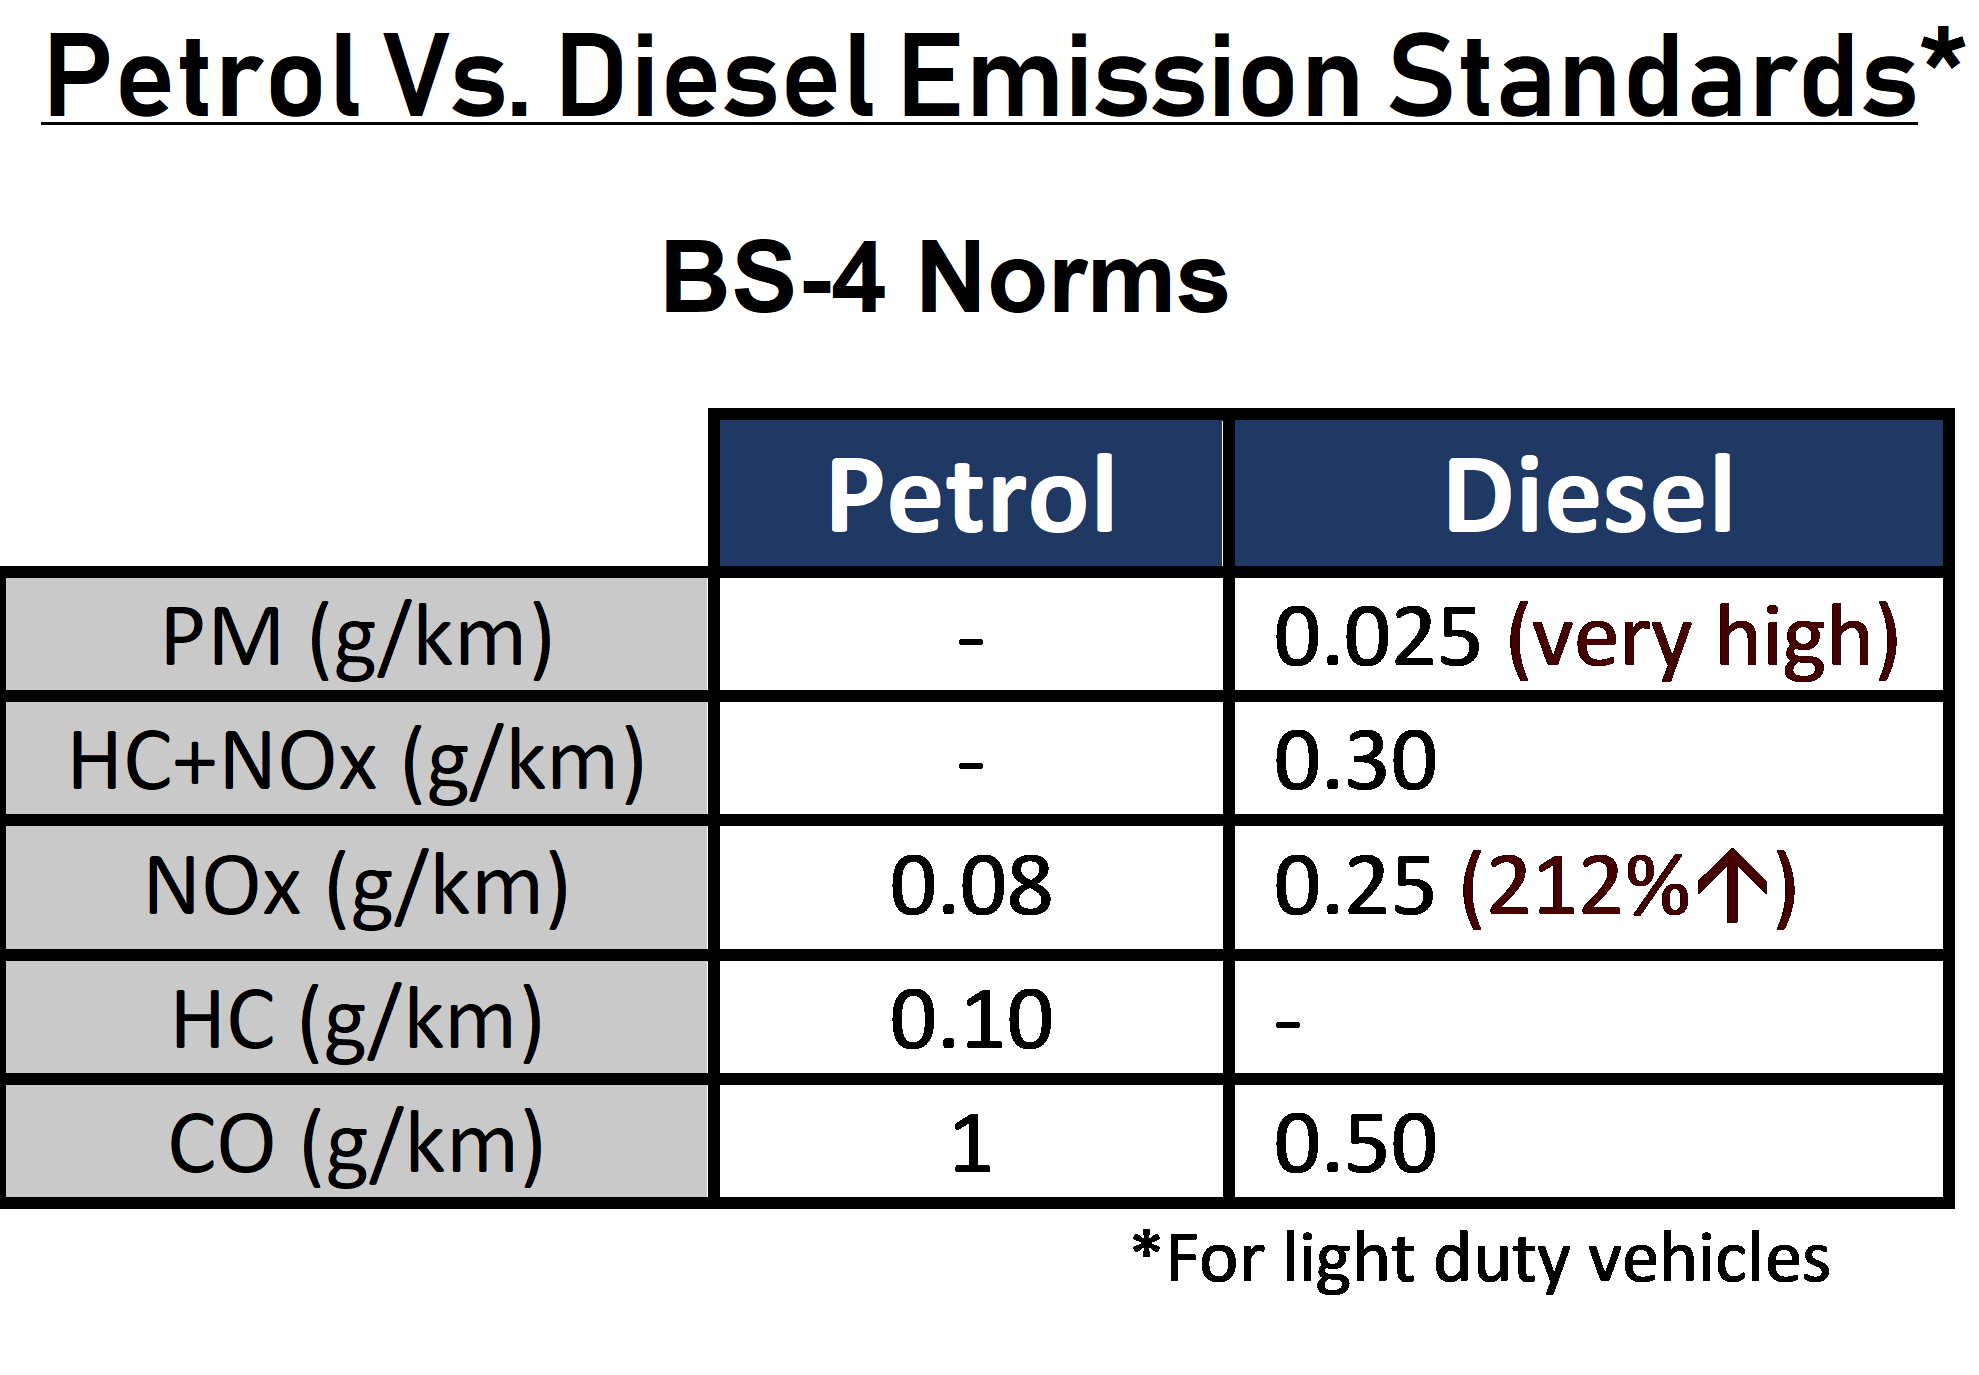 Emission standards